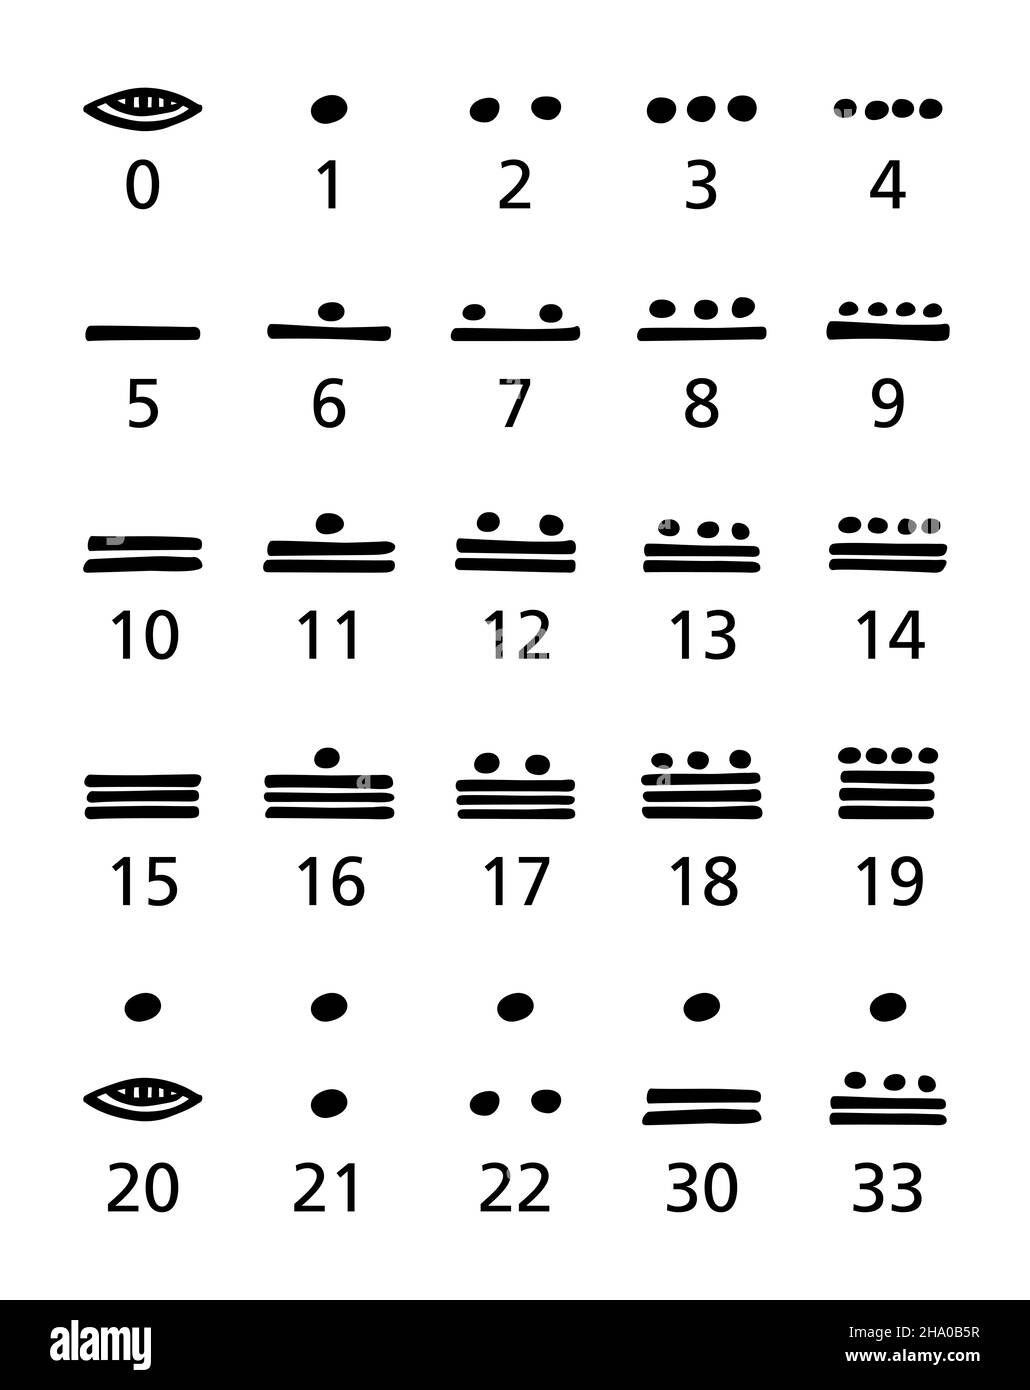 Maya-Ziffern, schwarz und weiß. Vigesimal, zwanzig-basierte Maya-Zahlensystem für die Darstellung von Zahlen und Kalenderdaten in der Maya-Zivilisation. Stockfoto